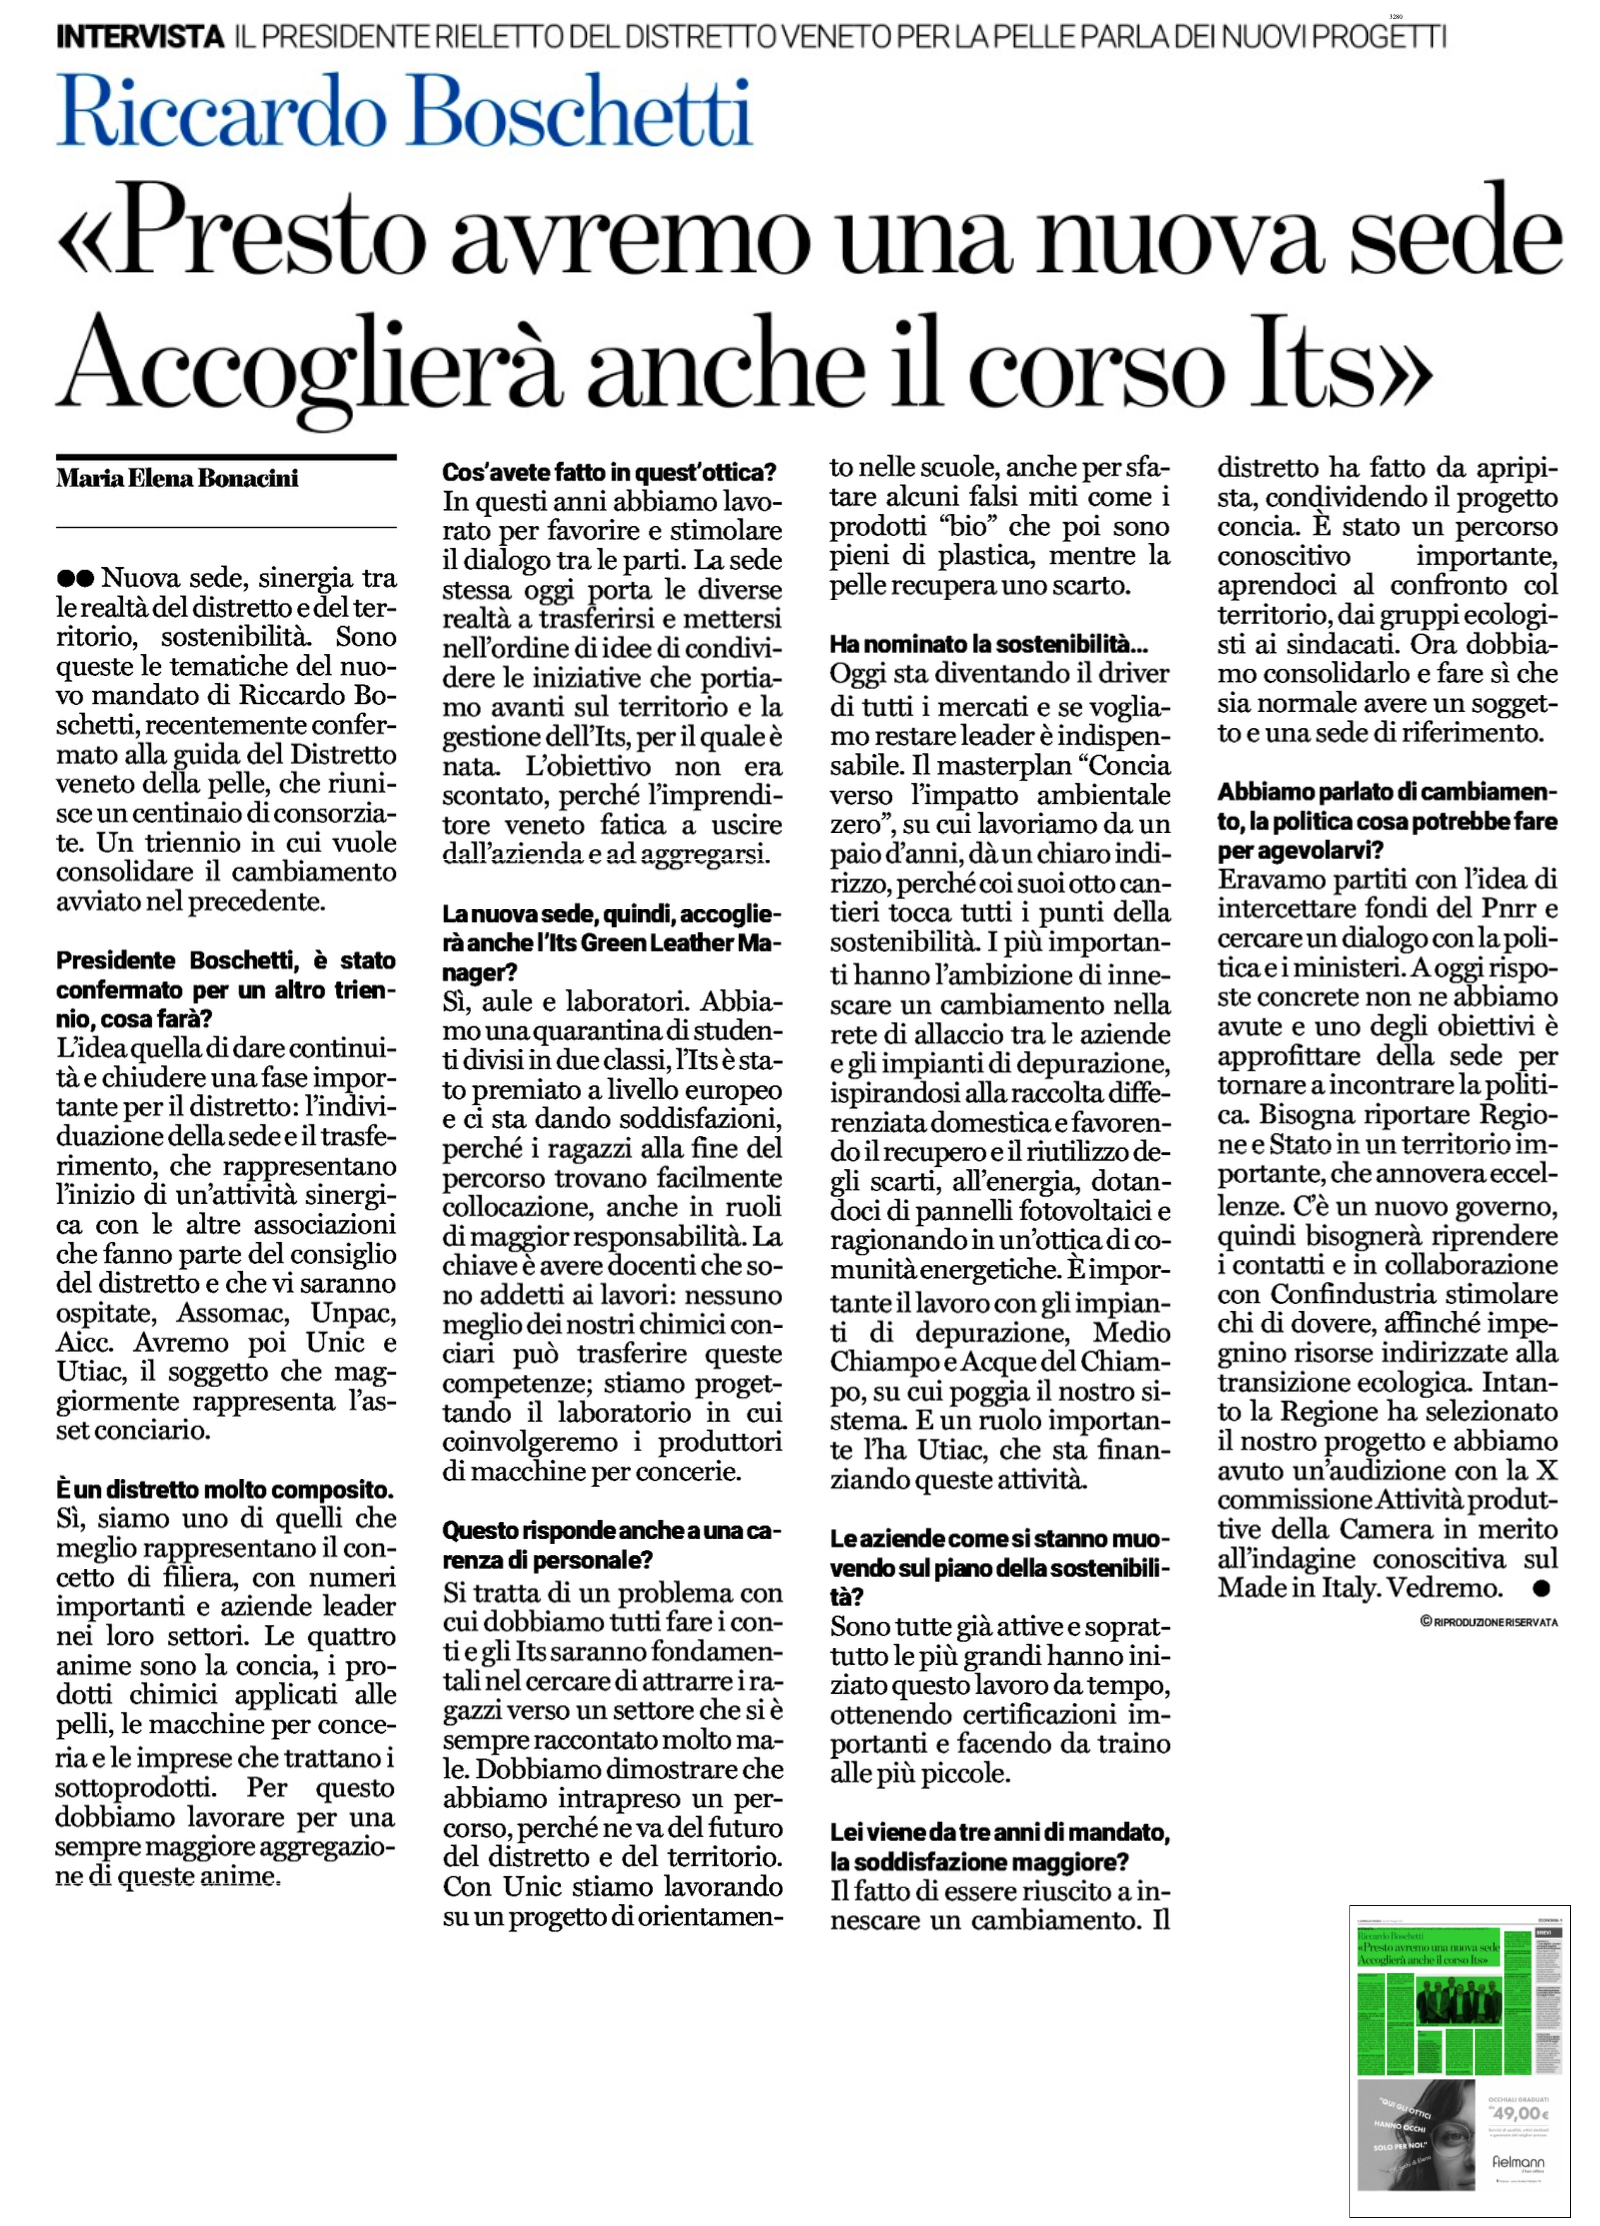 Distretto Veneto Della Pelle Intervista Presidente Riccardo Boschetti Giornale Di Vicenza Gdv A